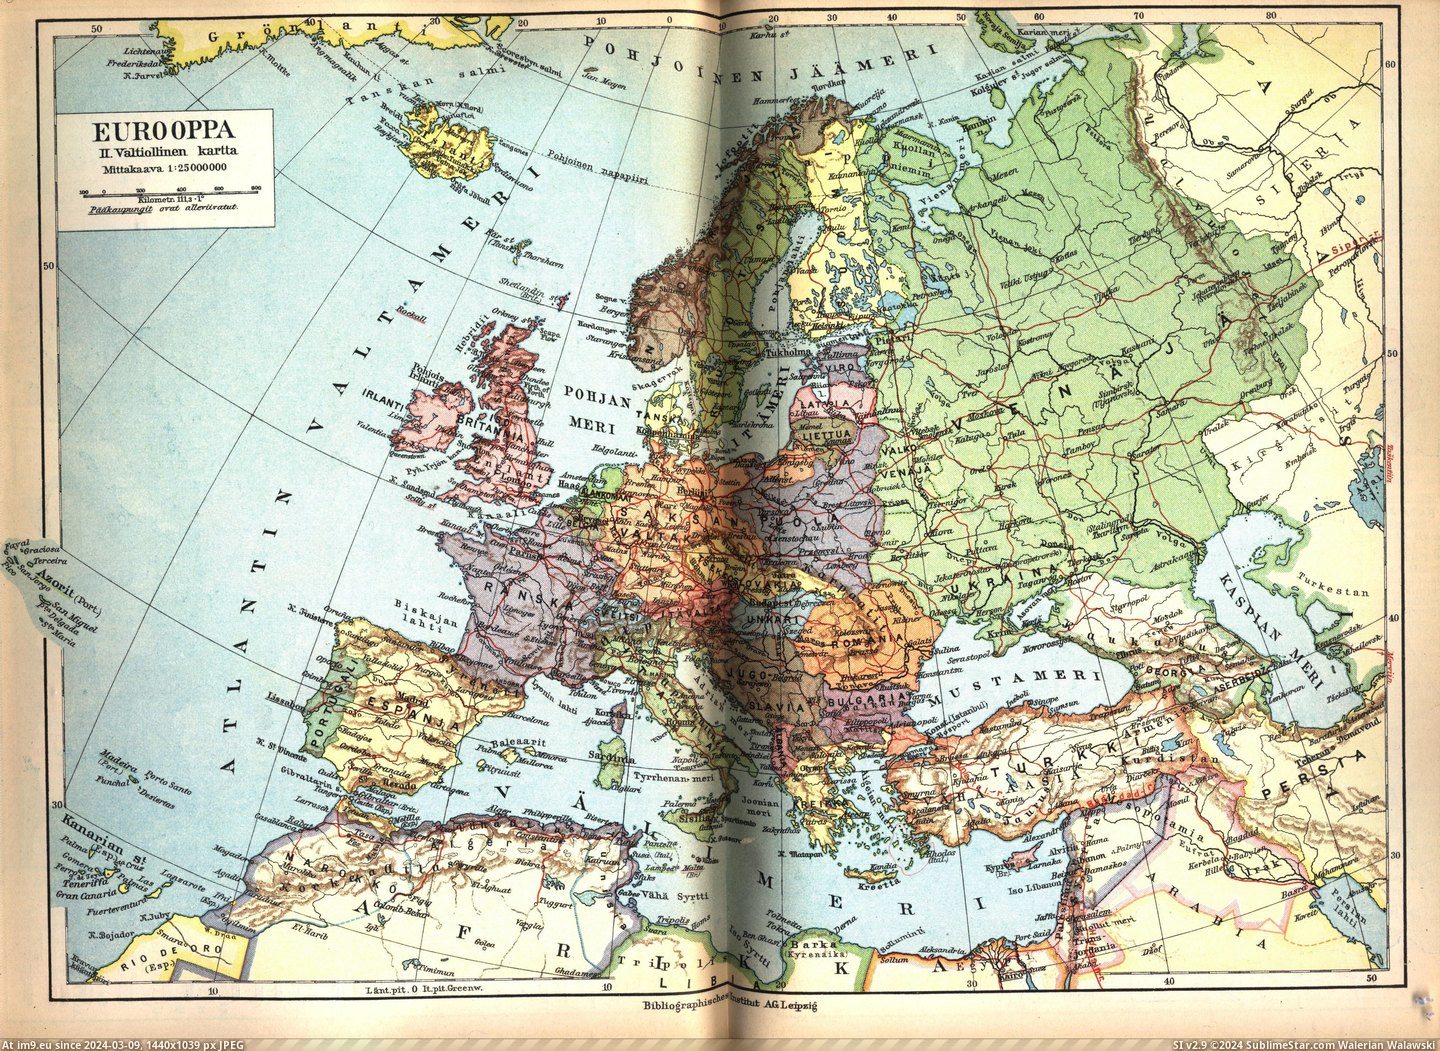 #4000x3000 #Eurooppa #Finland [Mapporn] Finland's 'Eurooppa' 1938 [4000x3000] Pic. (Obraz z album My r/MAPS favs))